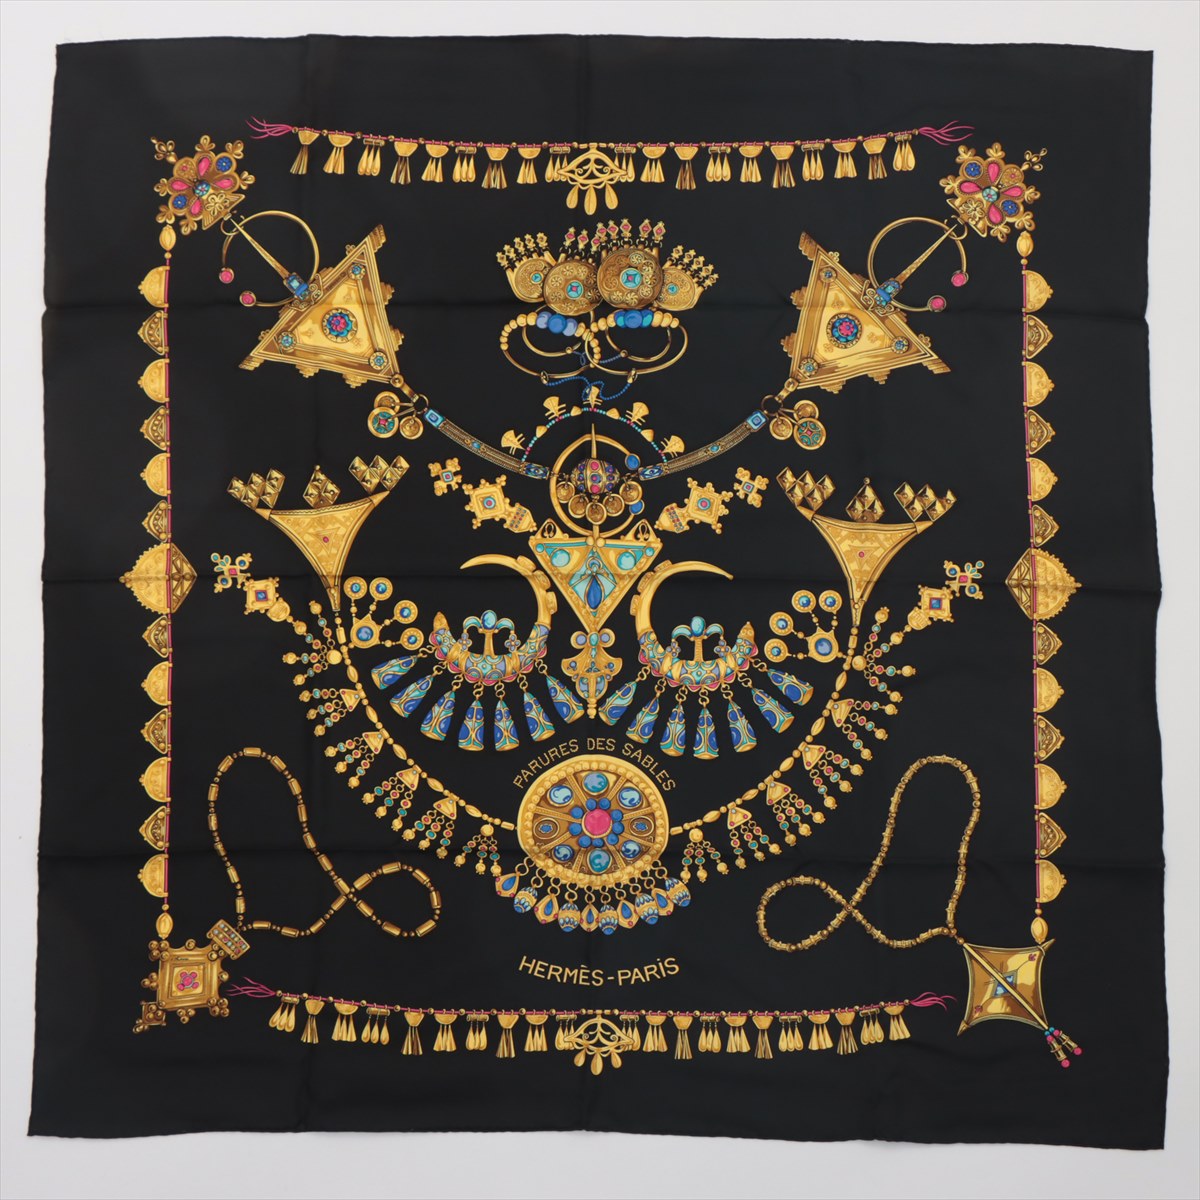 エルメス　HERMES　カレ９０　ブラック系　サーベル飾り袋　 PARURES DES SABLES 砂漠のアクセサリー　スカーフ　シルク